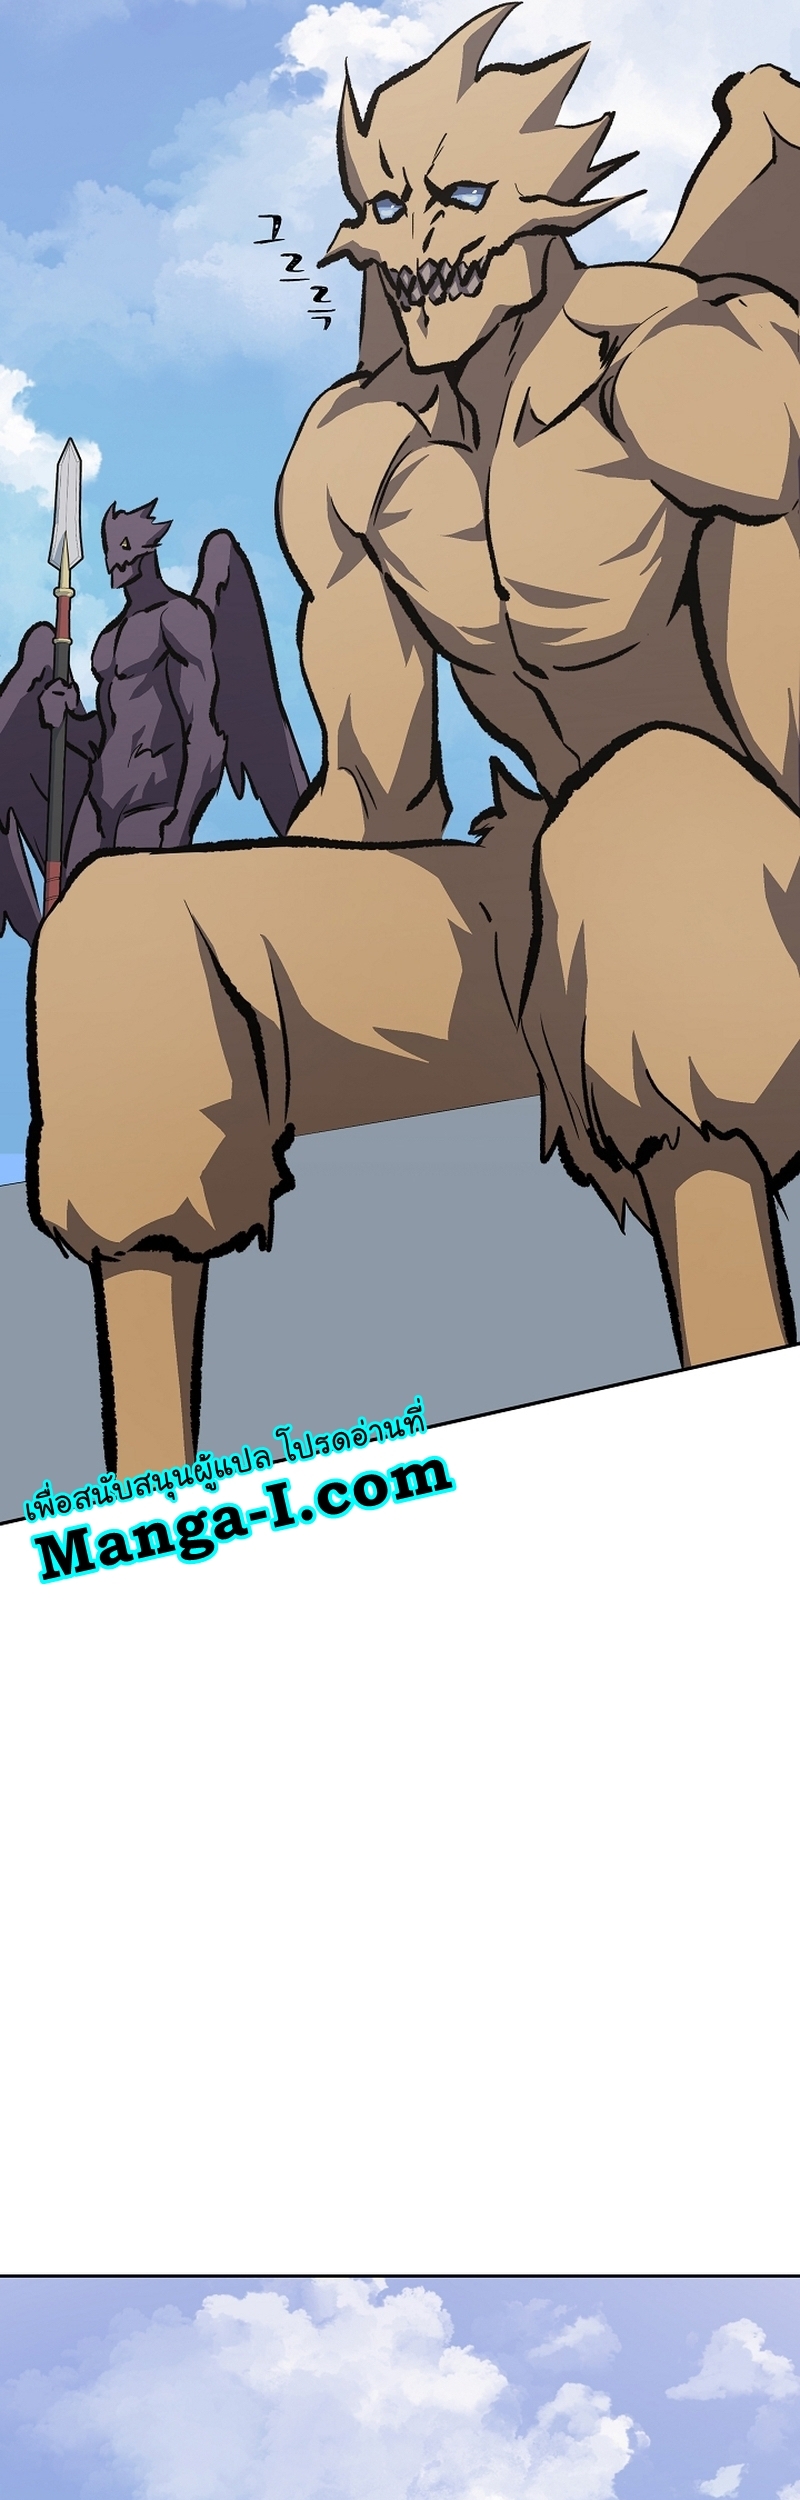 Manga Manhwa Level 1 Player 73 (33)